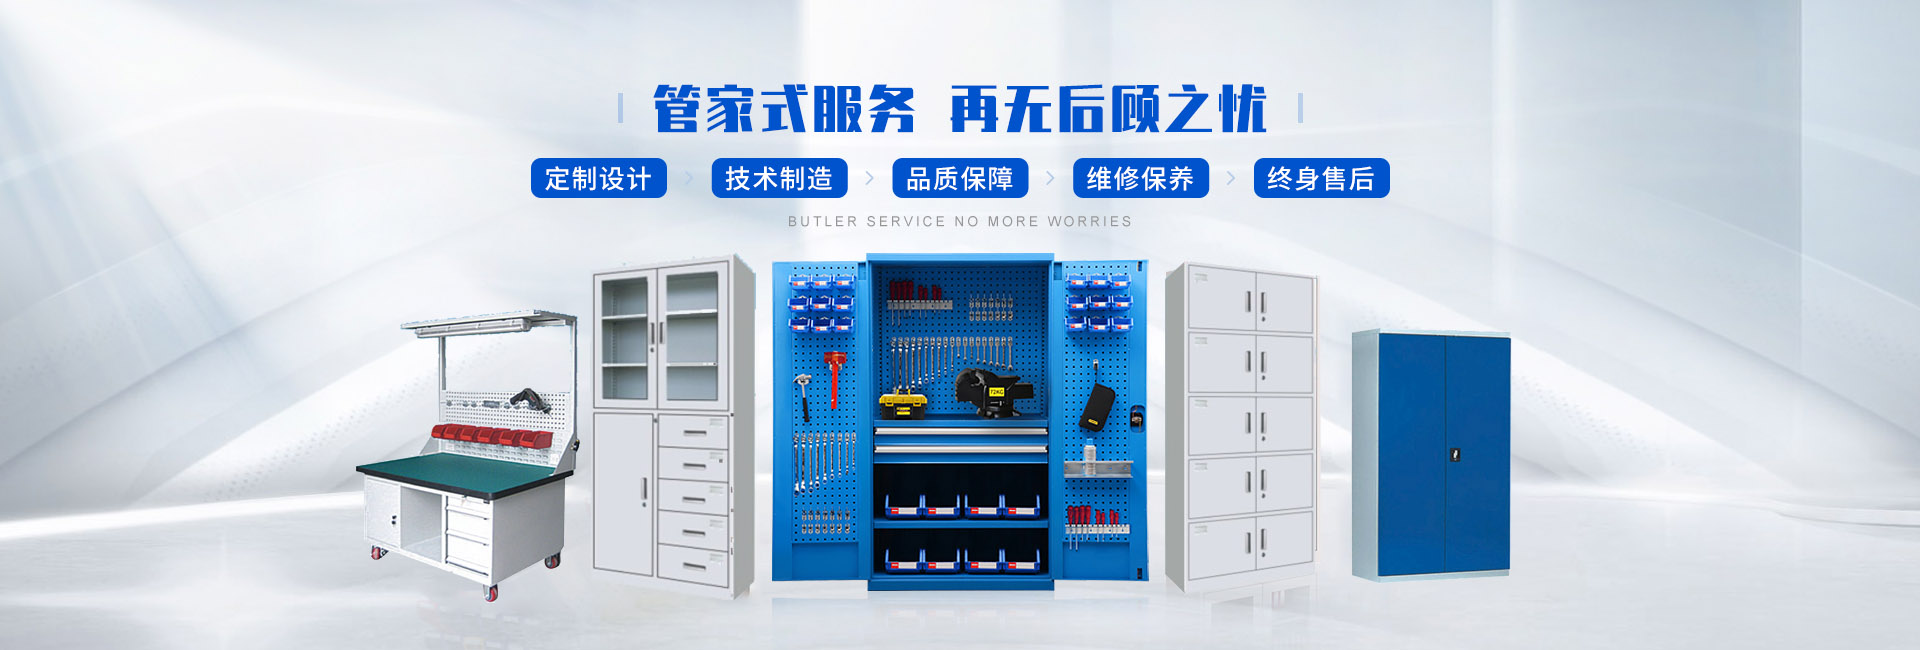 上海力塔工位器具有限公司